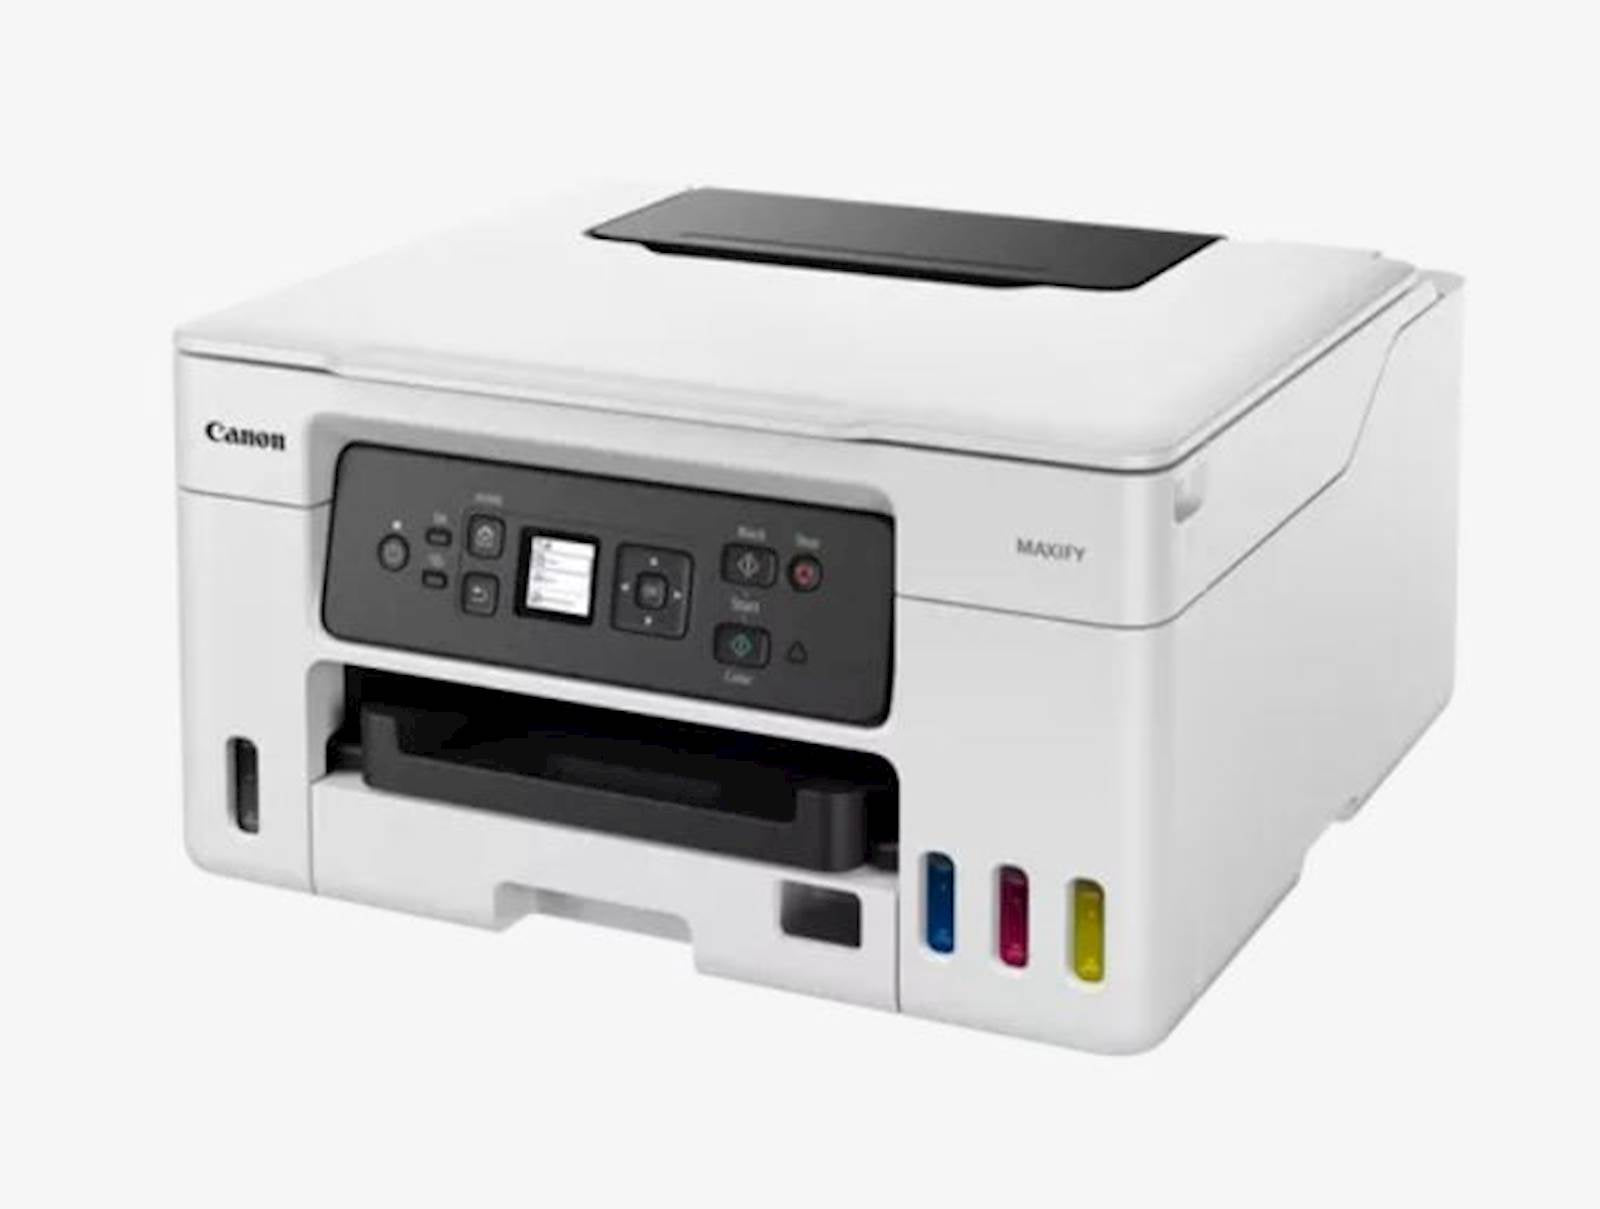 Printer CANON MFP MAXIFY GX3040 Inkjet WiFi USB